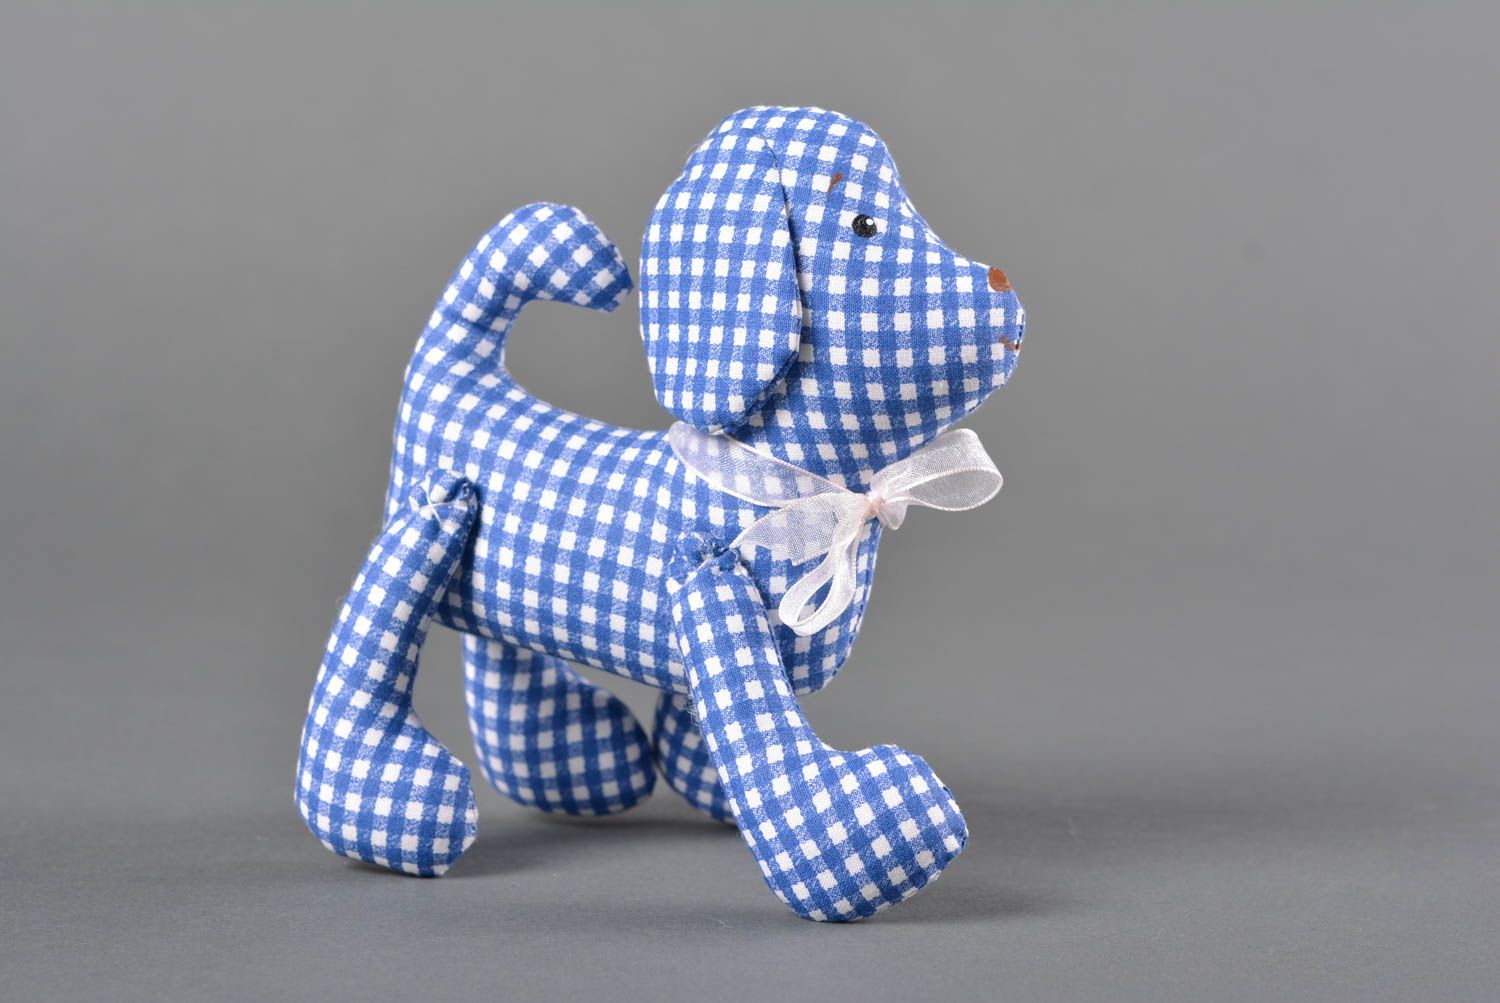 Игрушка собачка ручной работы детская игрушка расписанная акрилом мягкая игрушка фото 1